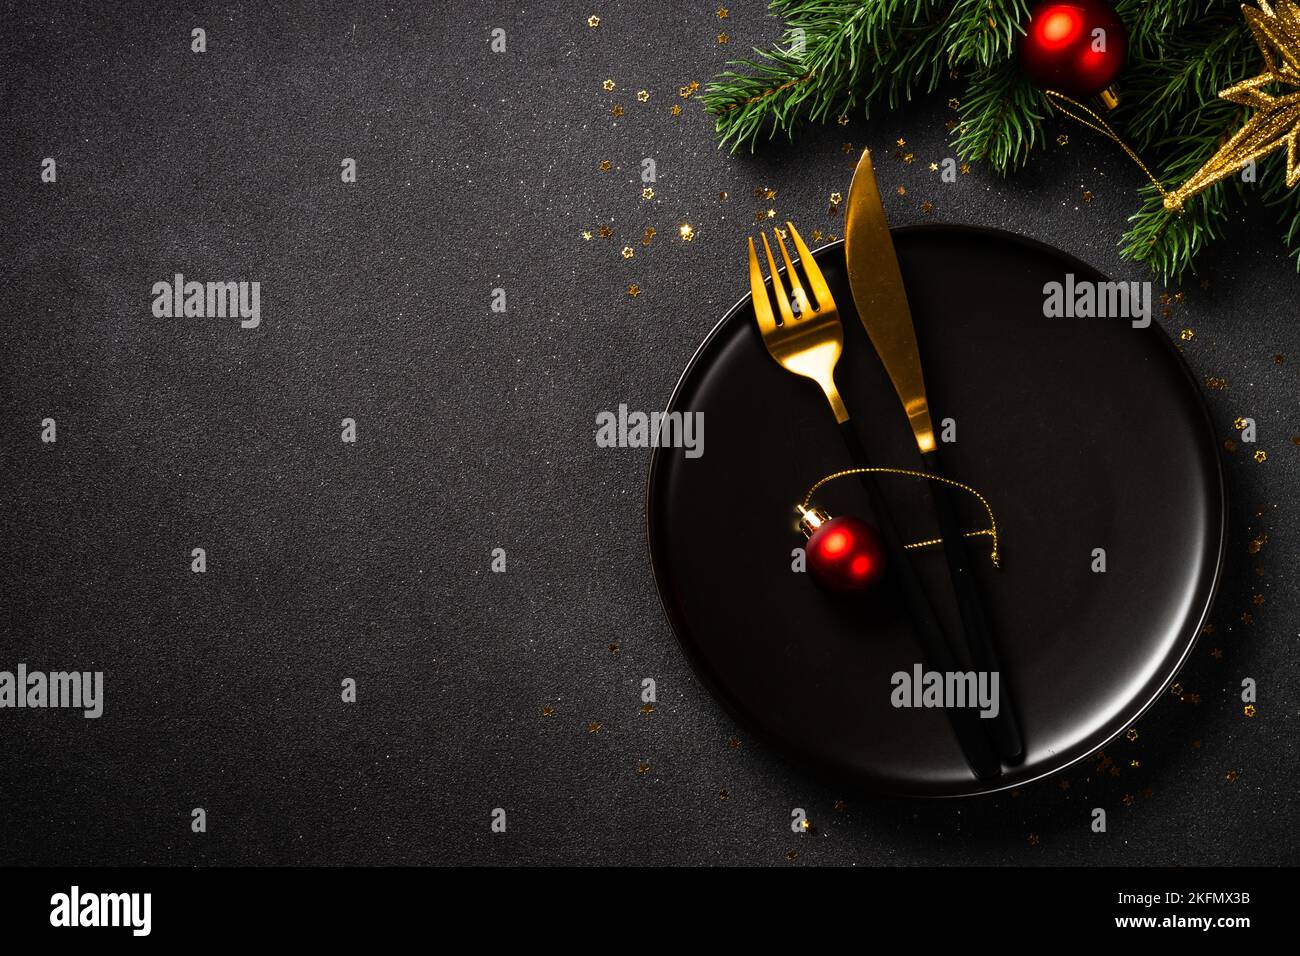 Table de Noël avec assiette noire, couverts dorés et décorations de Noël. Banque D'Images